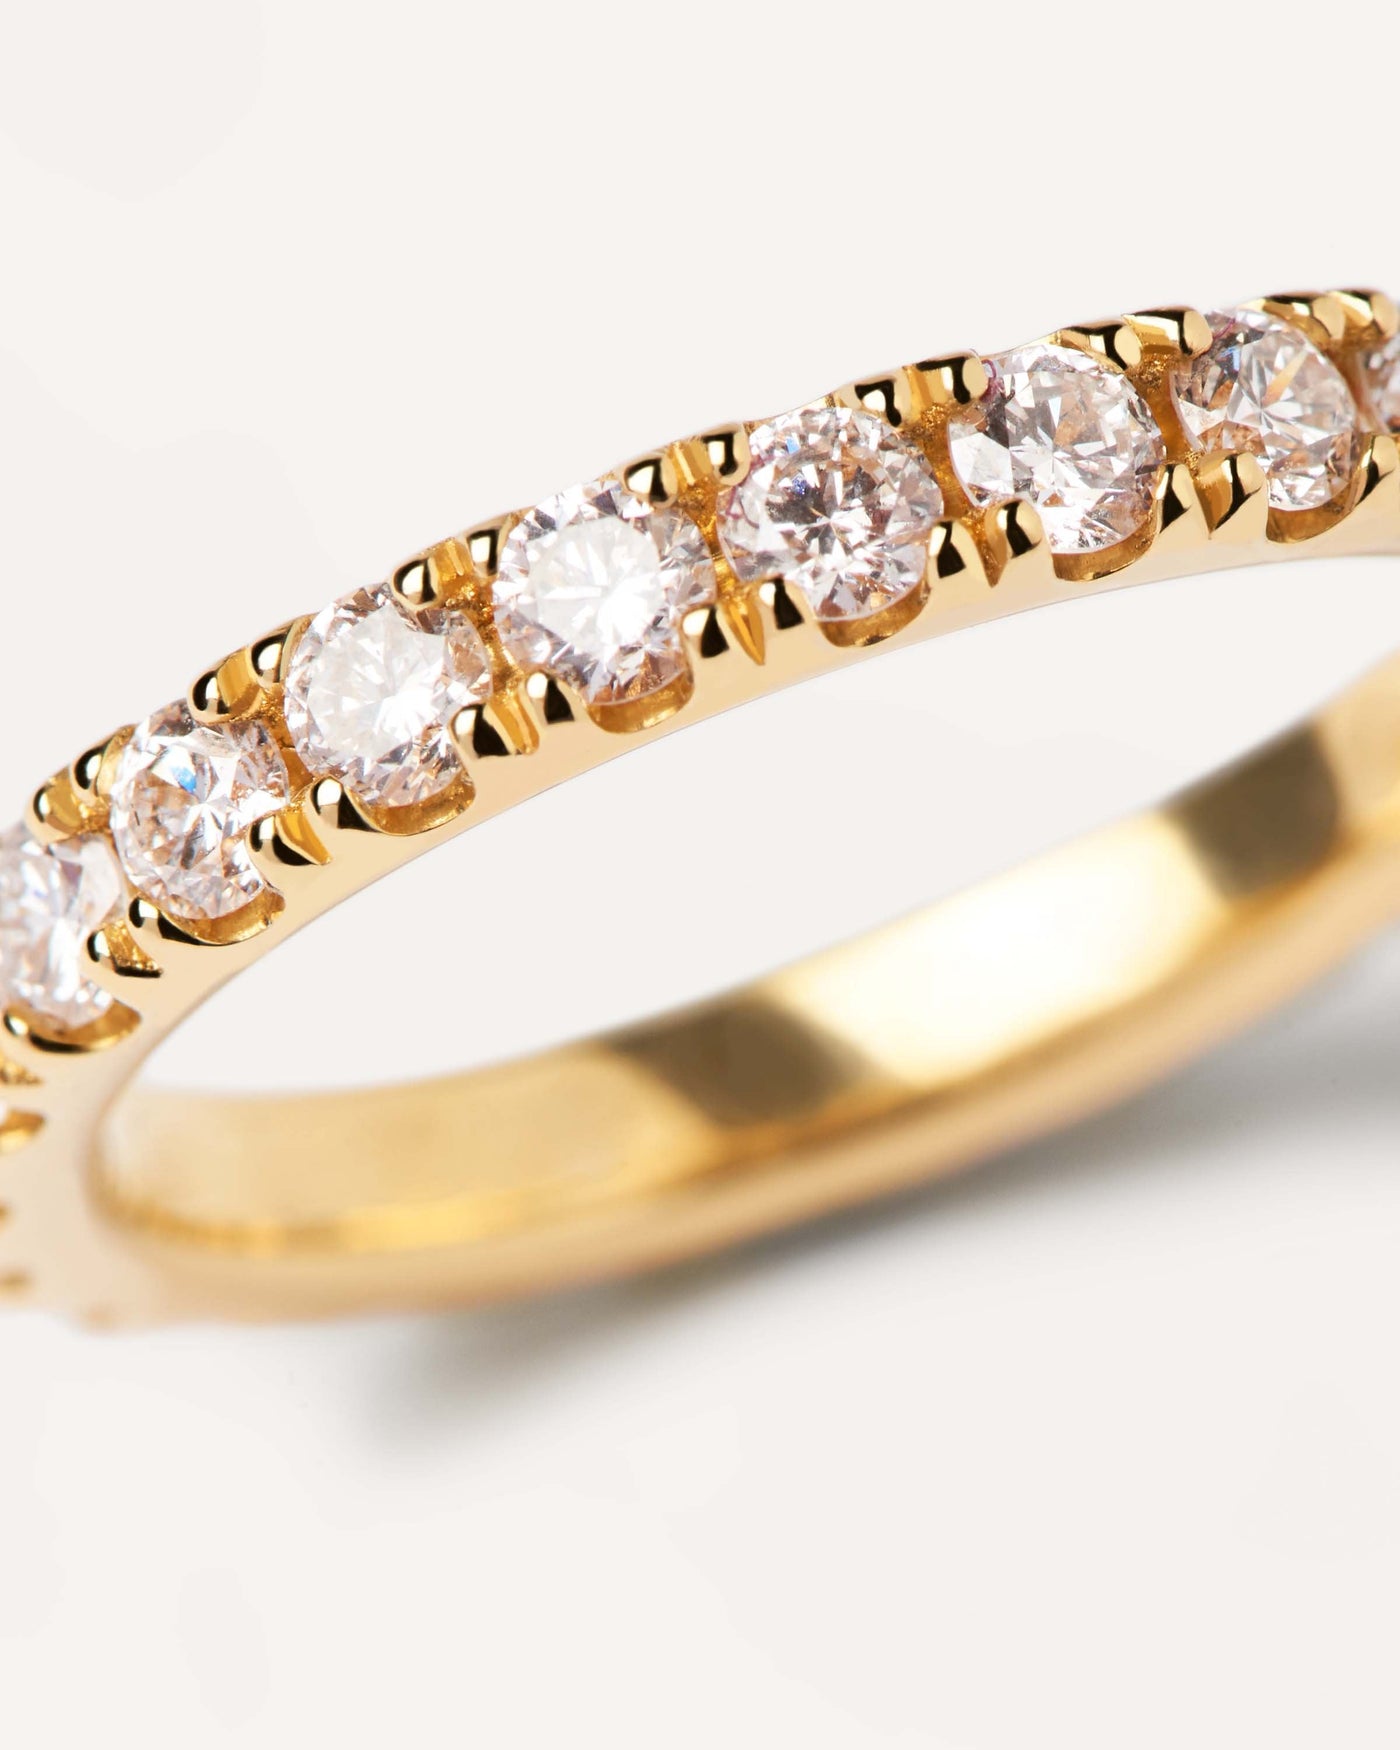 GoldRing mit Diamanten Eternity Supreme. 18k Gelbgold-Eternitätsring, mit großen Diamanten aus Laborgewachsen und 1.55 Karat entspricht. Erhalten Sie die neuesten Produkte von PDPAOLA. Geben Sie Ihre Bestellung sicher auf und erhalten Sie diesen Bestseller.